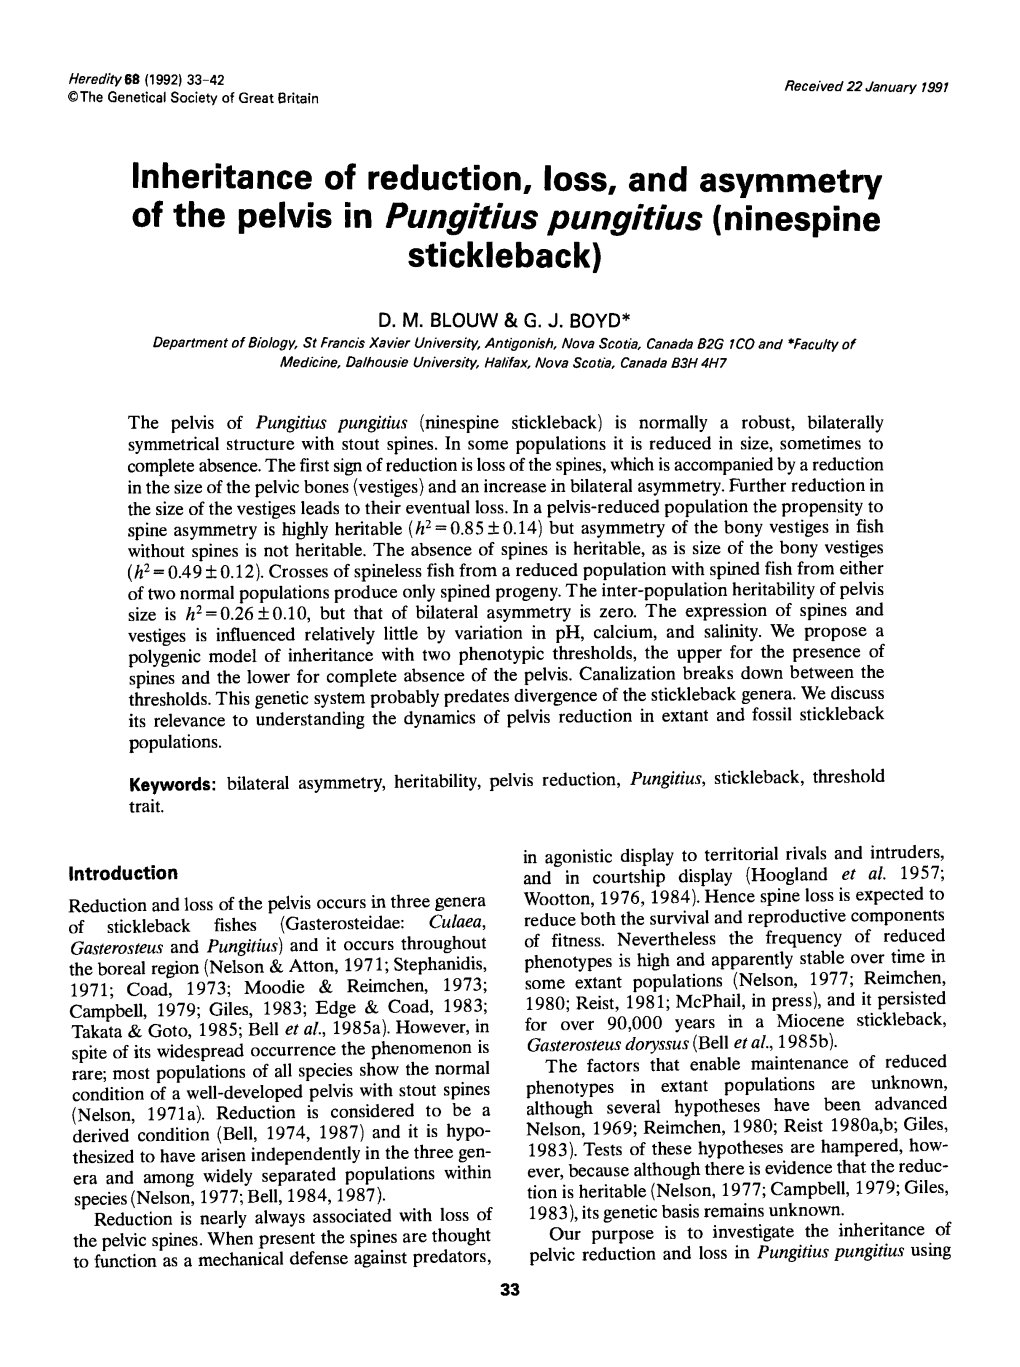 Of the Pelvis in Pungitius Pungitius (Ninespine Stickleback)